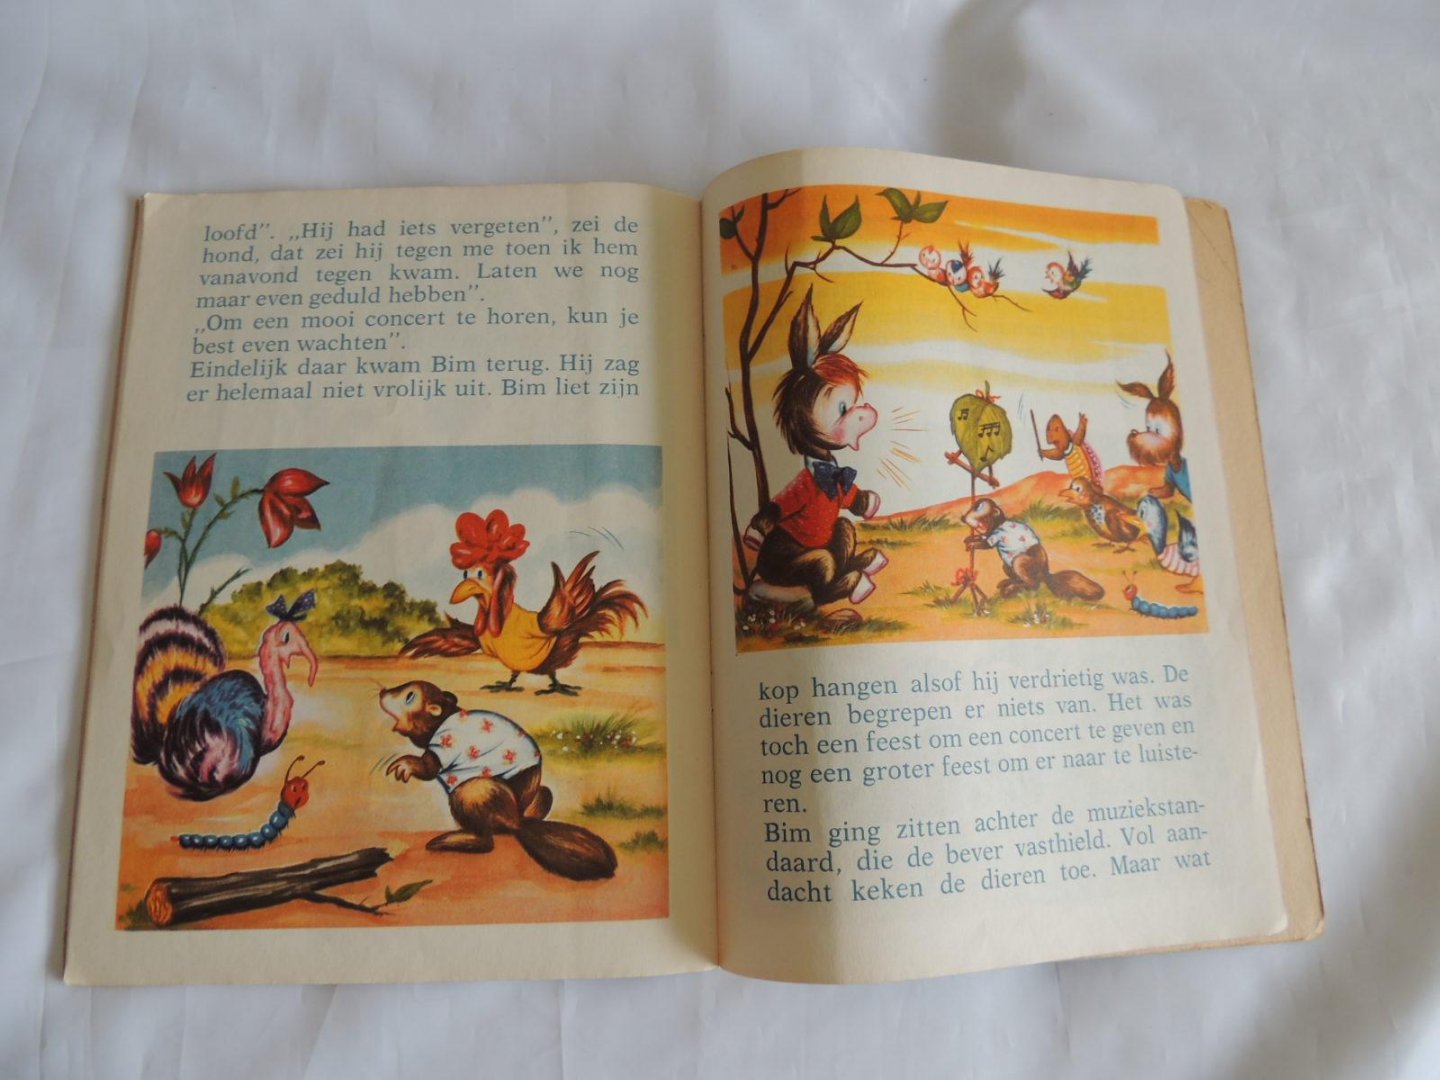 animados kinderboeken - Tekko Het Zieke Varkentje - Het Fluitende Ezeltje